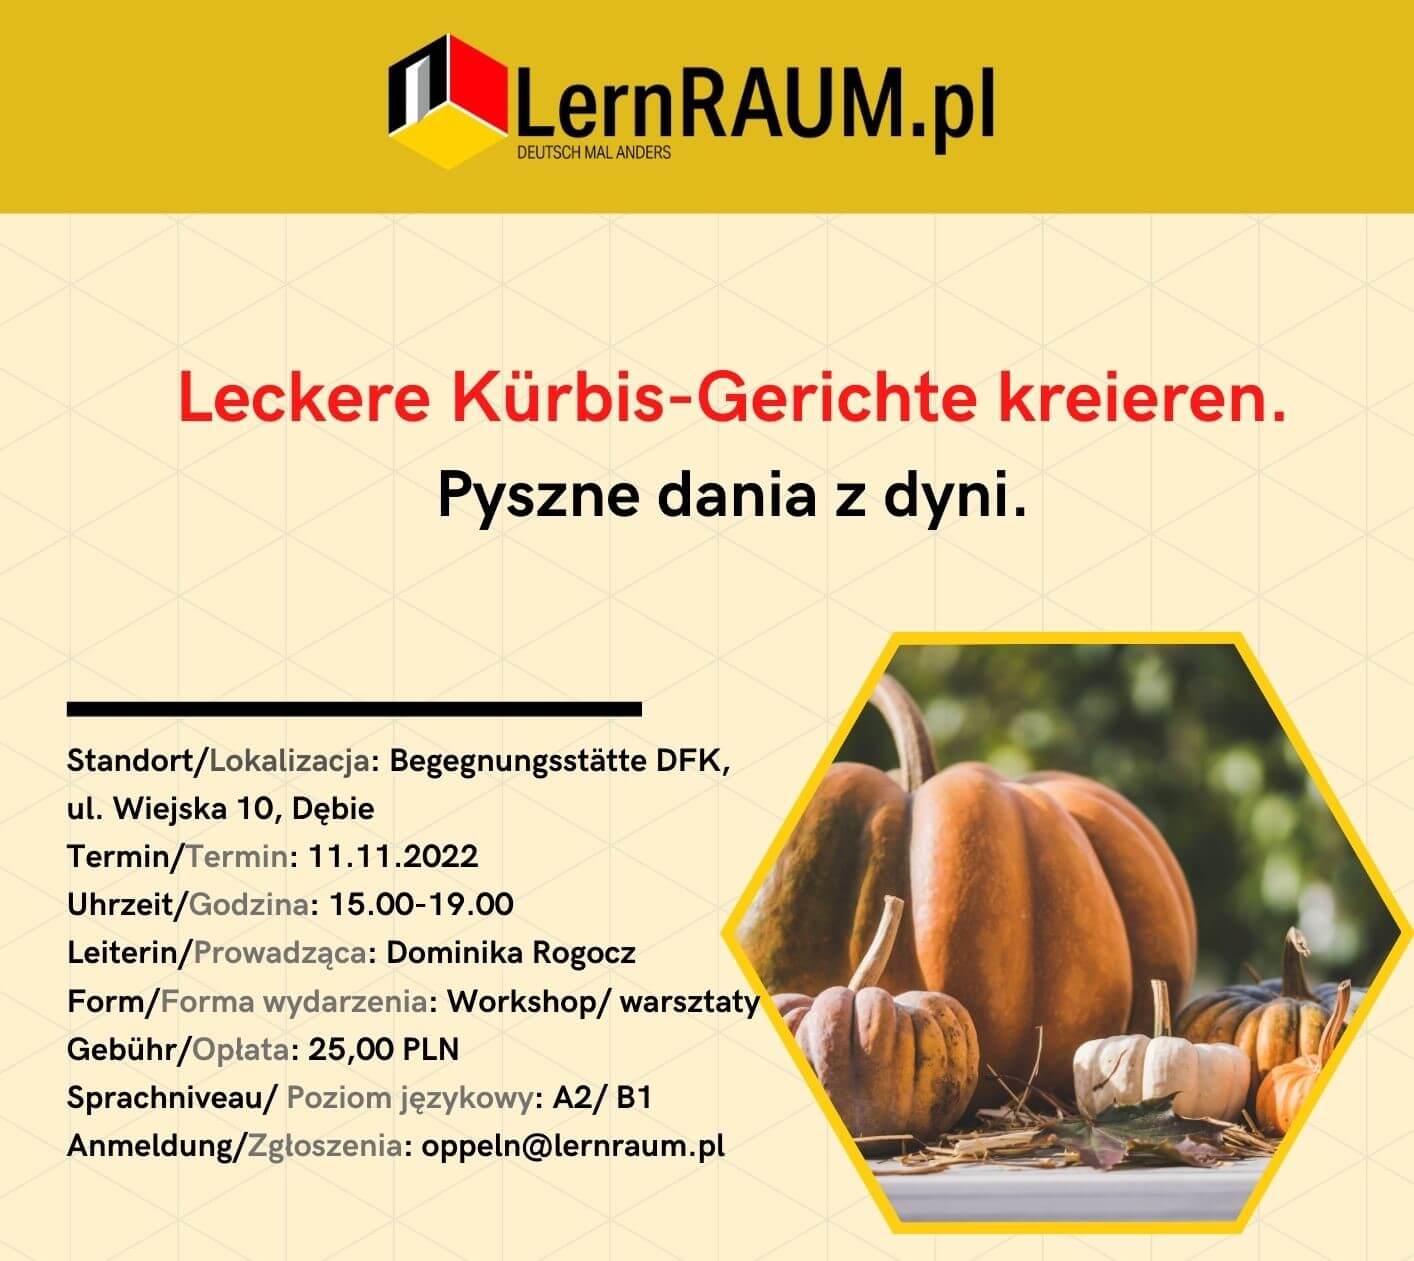 Lernraum.pl: wybrane wydarzenia w listopadzie